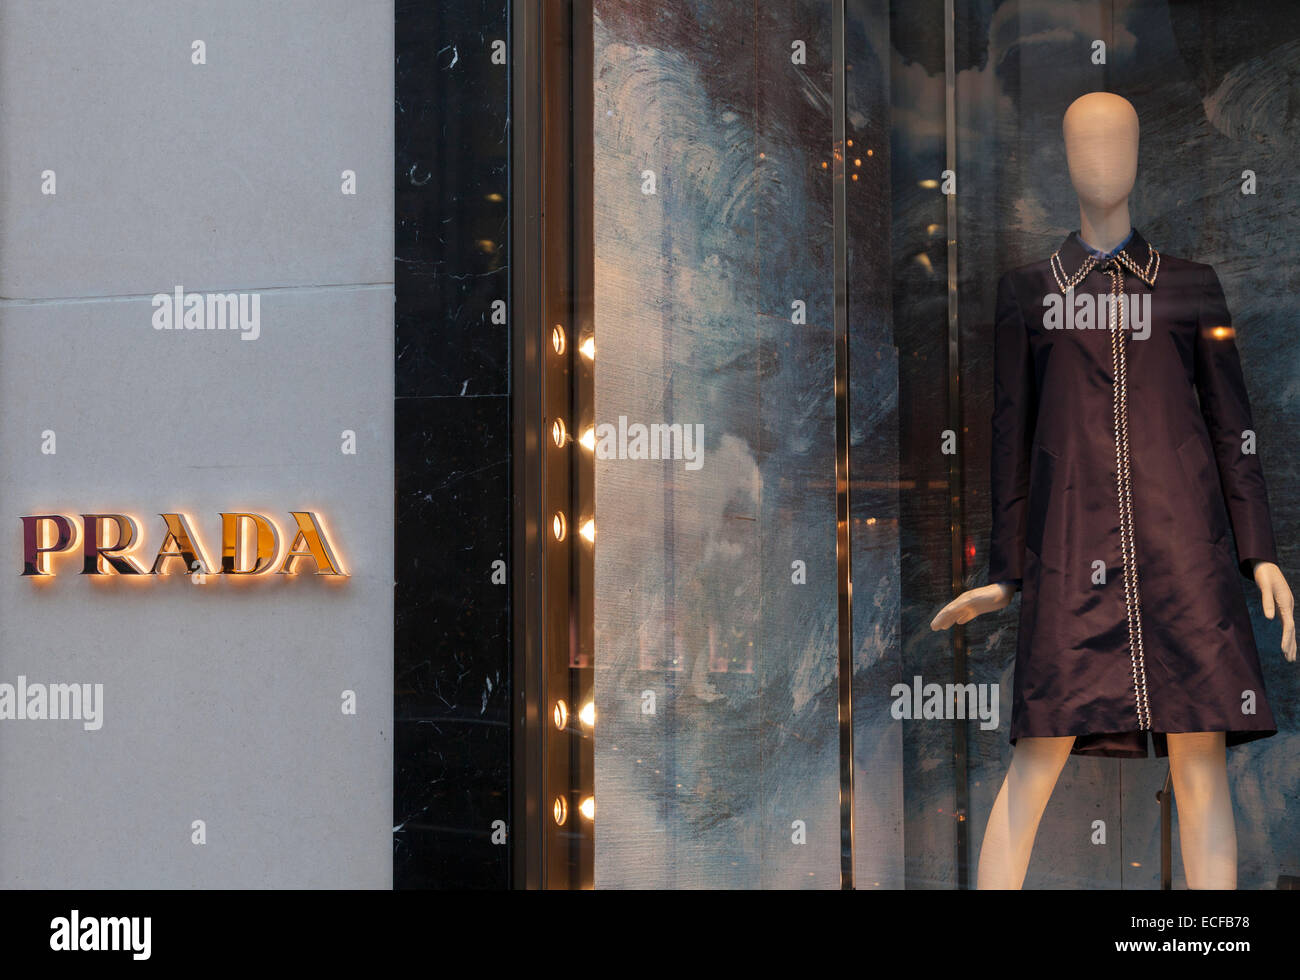 Prada fashion store on New Bond Street Stock Photo